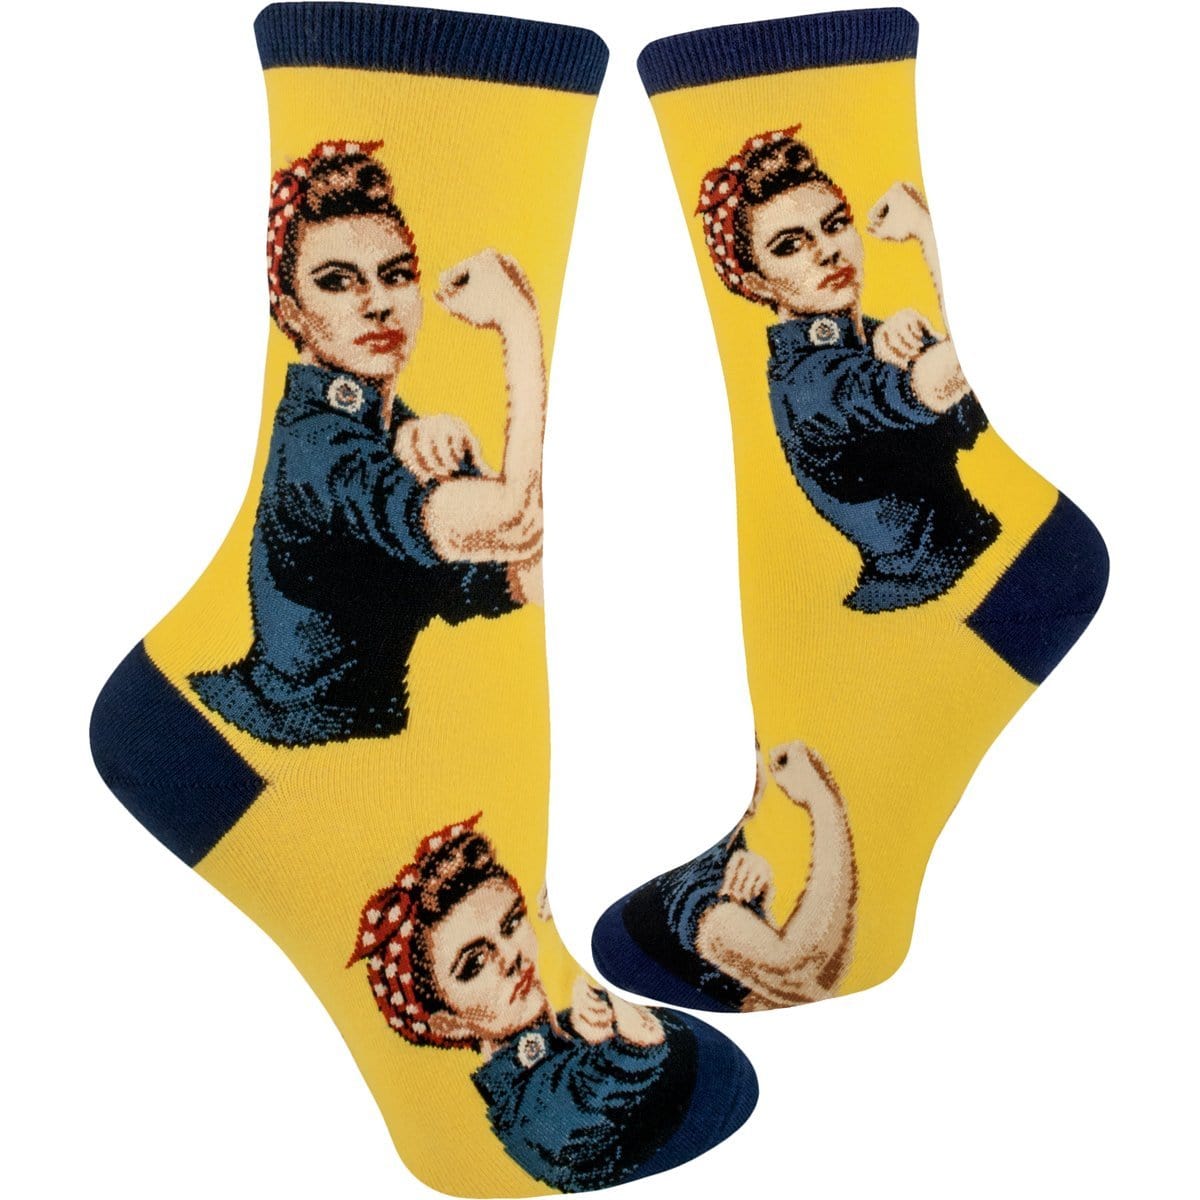 Rosie the Riveter Women's Crew Sock Navy